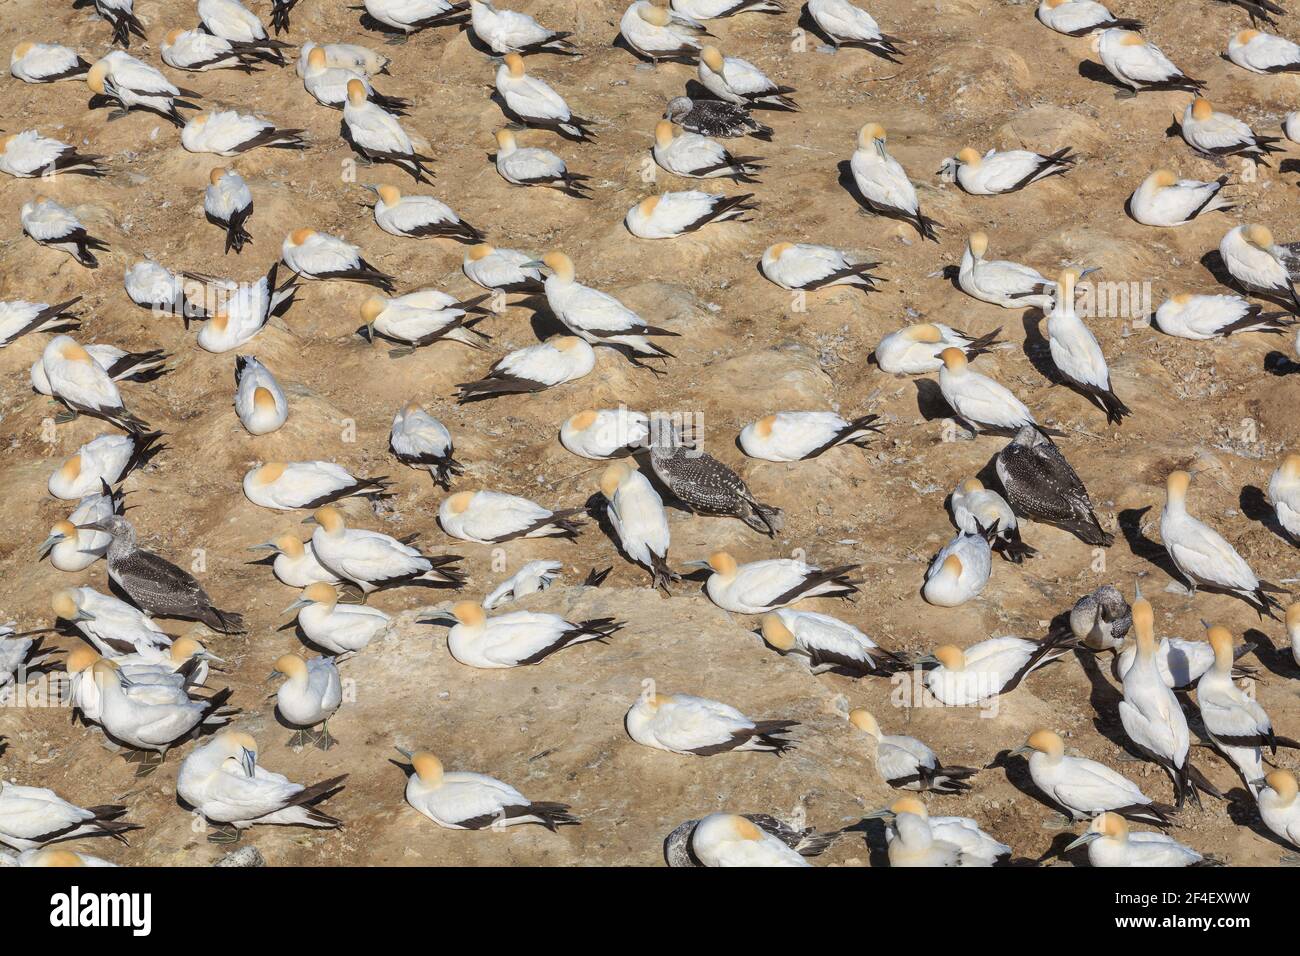 Une colonie de gannets Australasiens. Les adultes ont un plumage blanc avec des têtes orange et les oiseaux juvéniles sont sombres et tachetés Banque D'Images